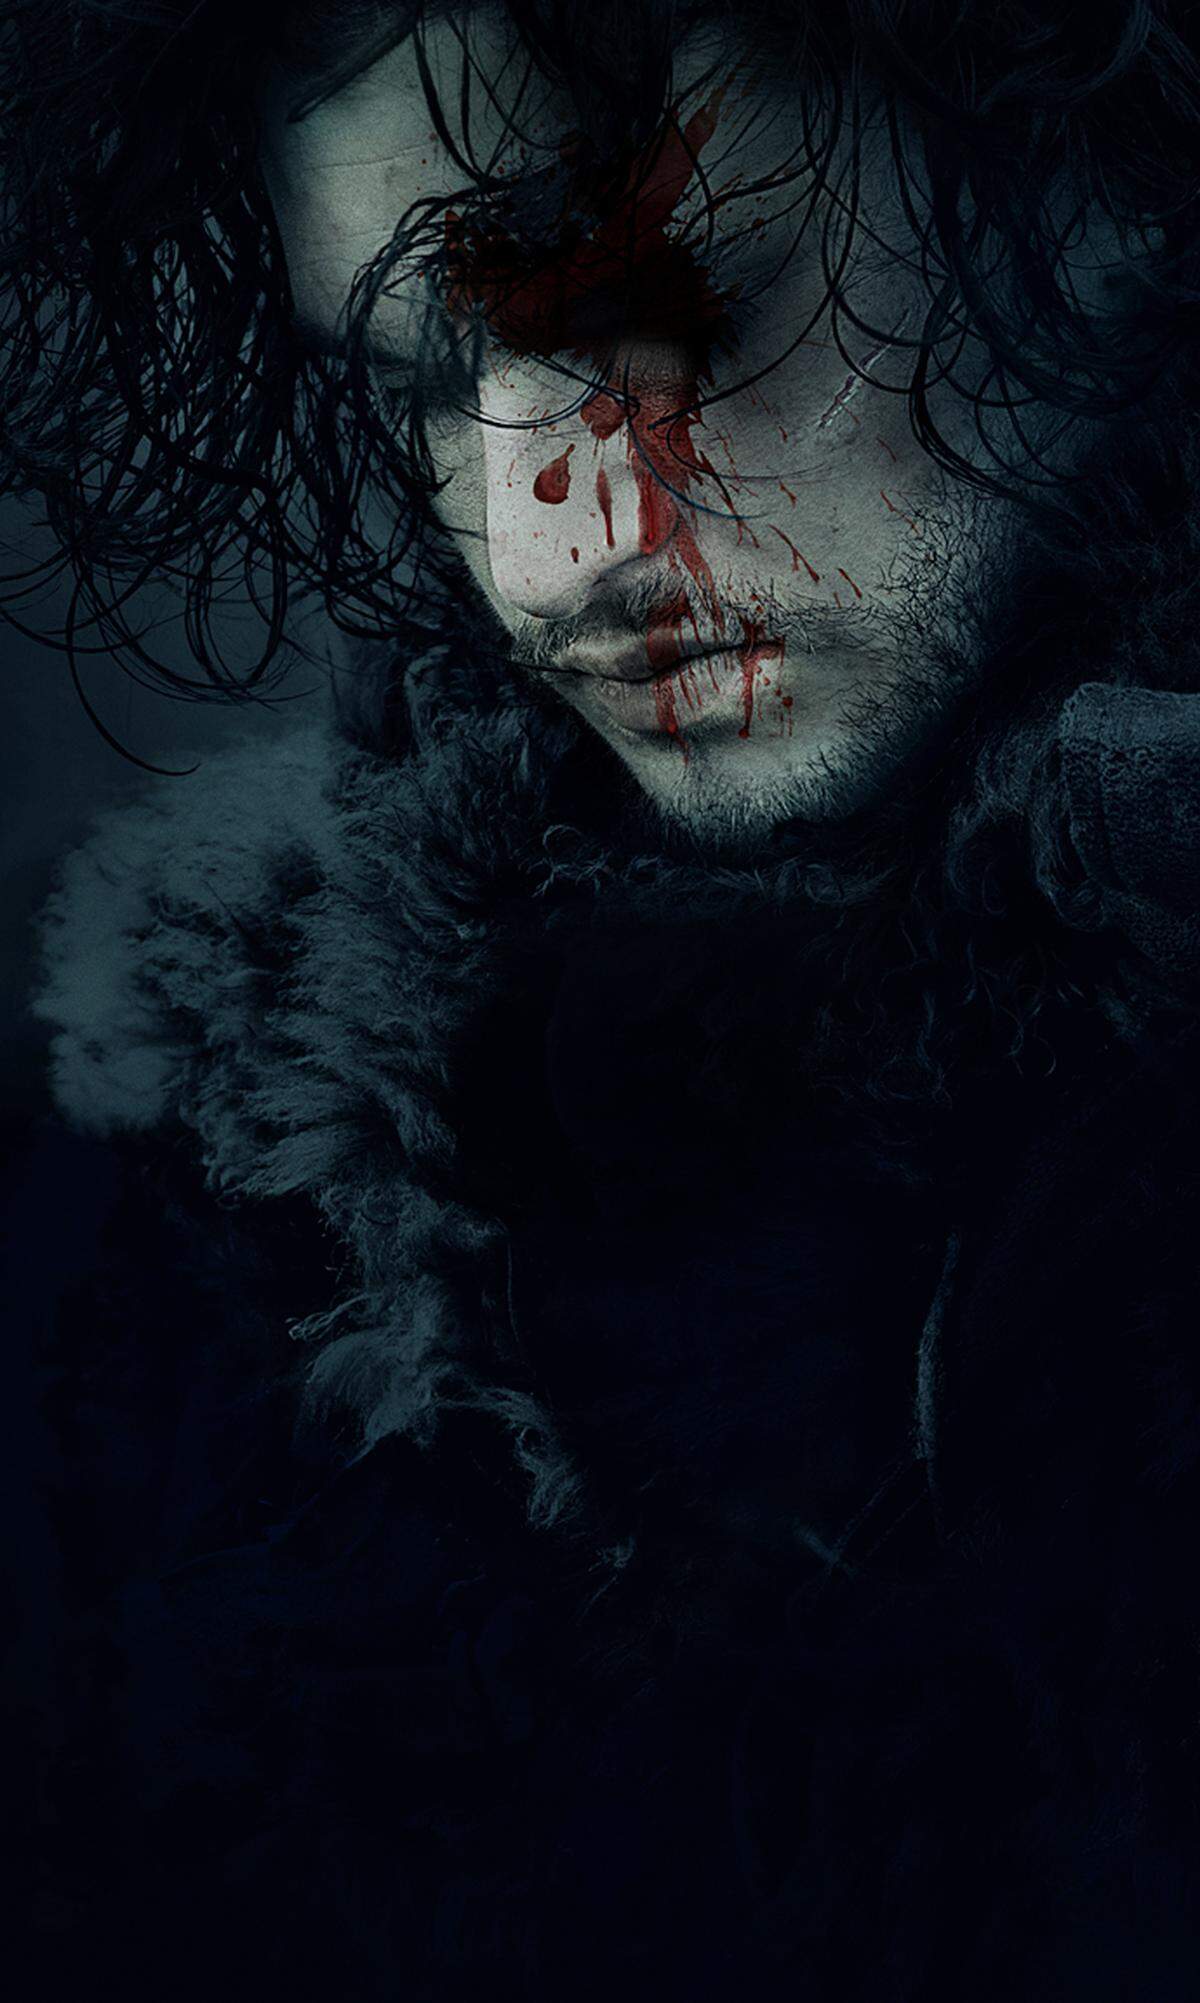 Außer er heißt Jon Snow. In den ersten sieben Staffeln der Fantasy-Serie starben schon einige Hauptfiguren - so auch Jon Snow. Nur wurde er im Gegensatz zu den anderen von den Toten wieder erweckt. Und wenn wir schon bei dem mysteriösen Mr. Snow sind: Er ist gar nicht der leibliche, ledige Sohn von Ned Stark. Sondern das Kind von dessen Schwester Lyanna und - tadaaa! - dem lang verstorbenen Thronfolger Rhaegar Targaryen. Somit hätte Jon Snow Anspruch auf den Eisternen Thron.